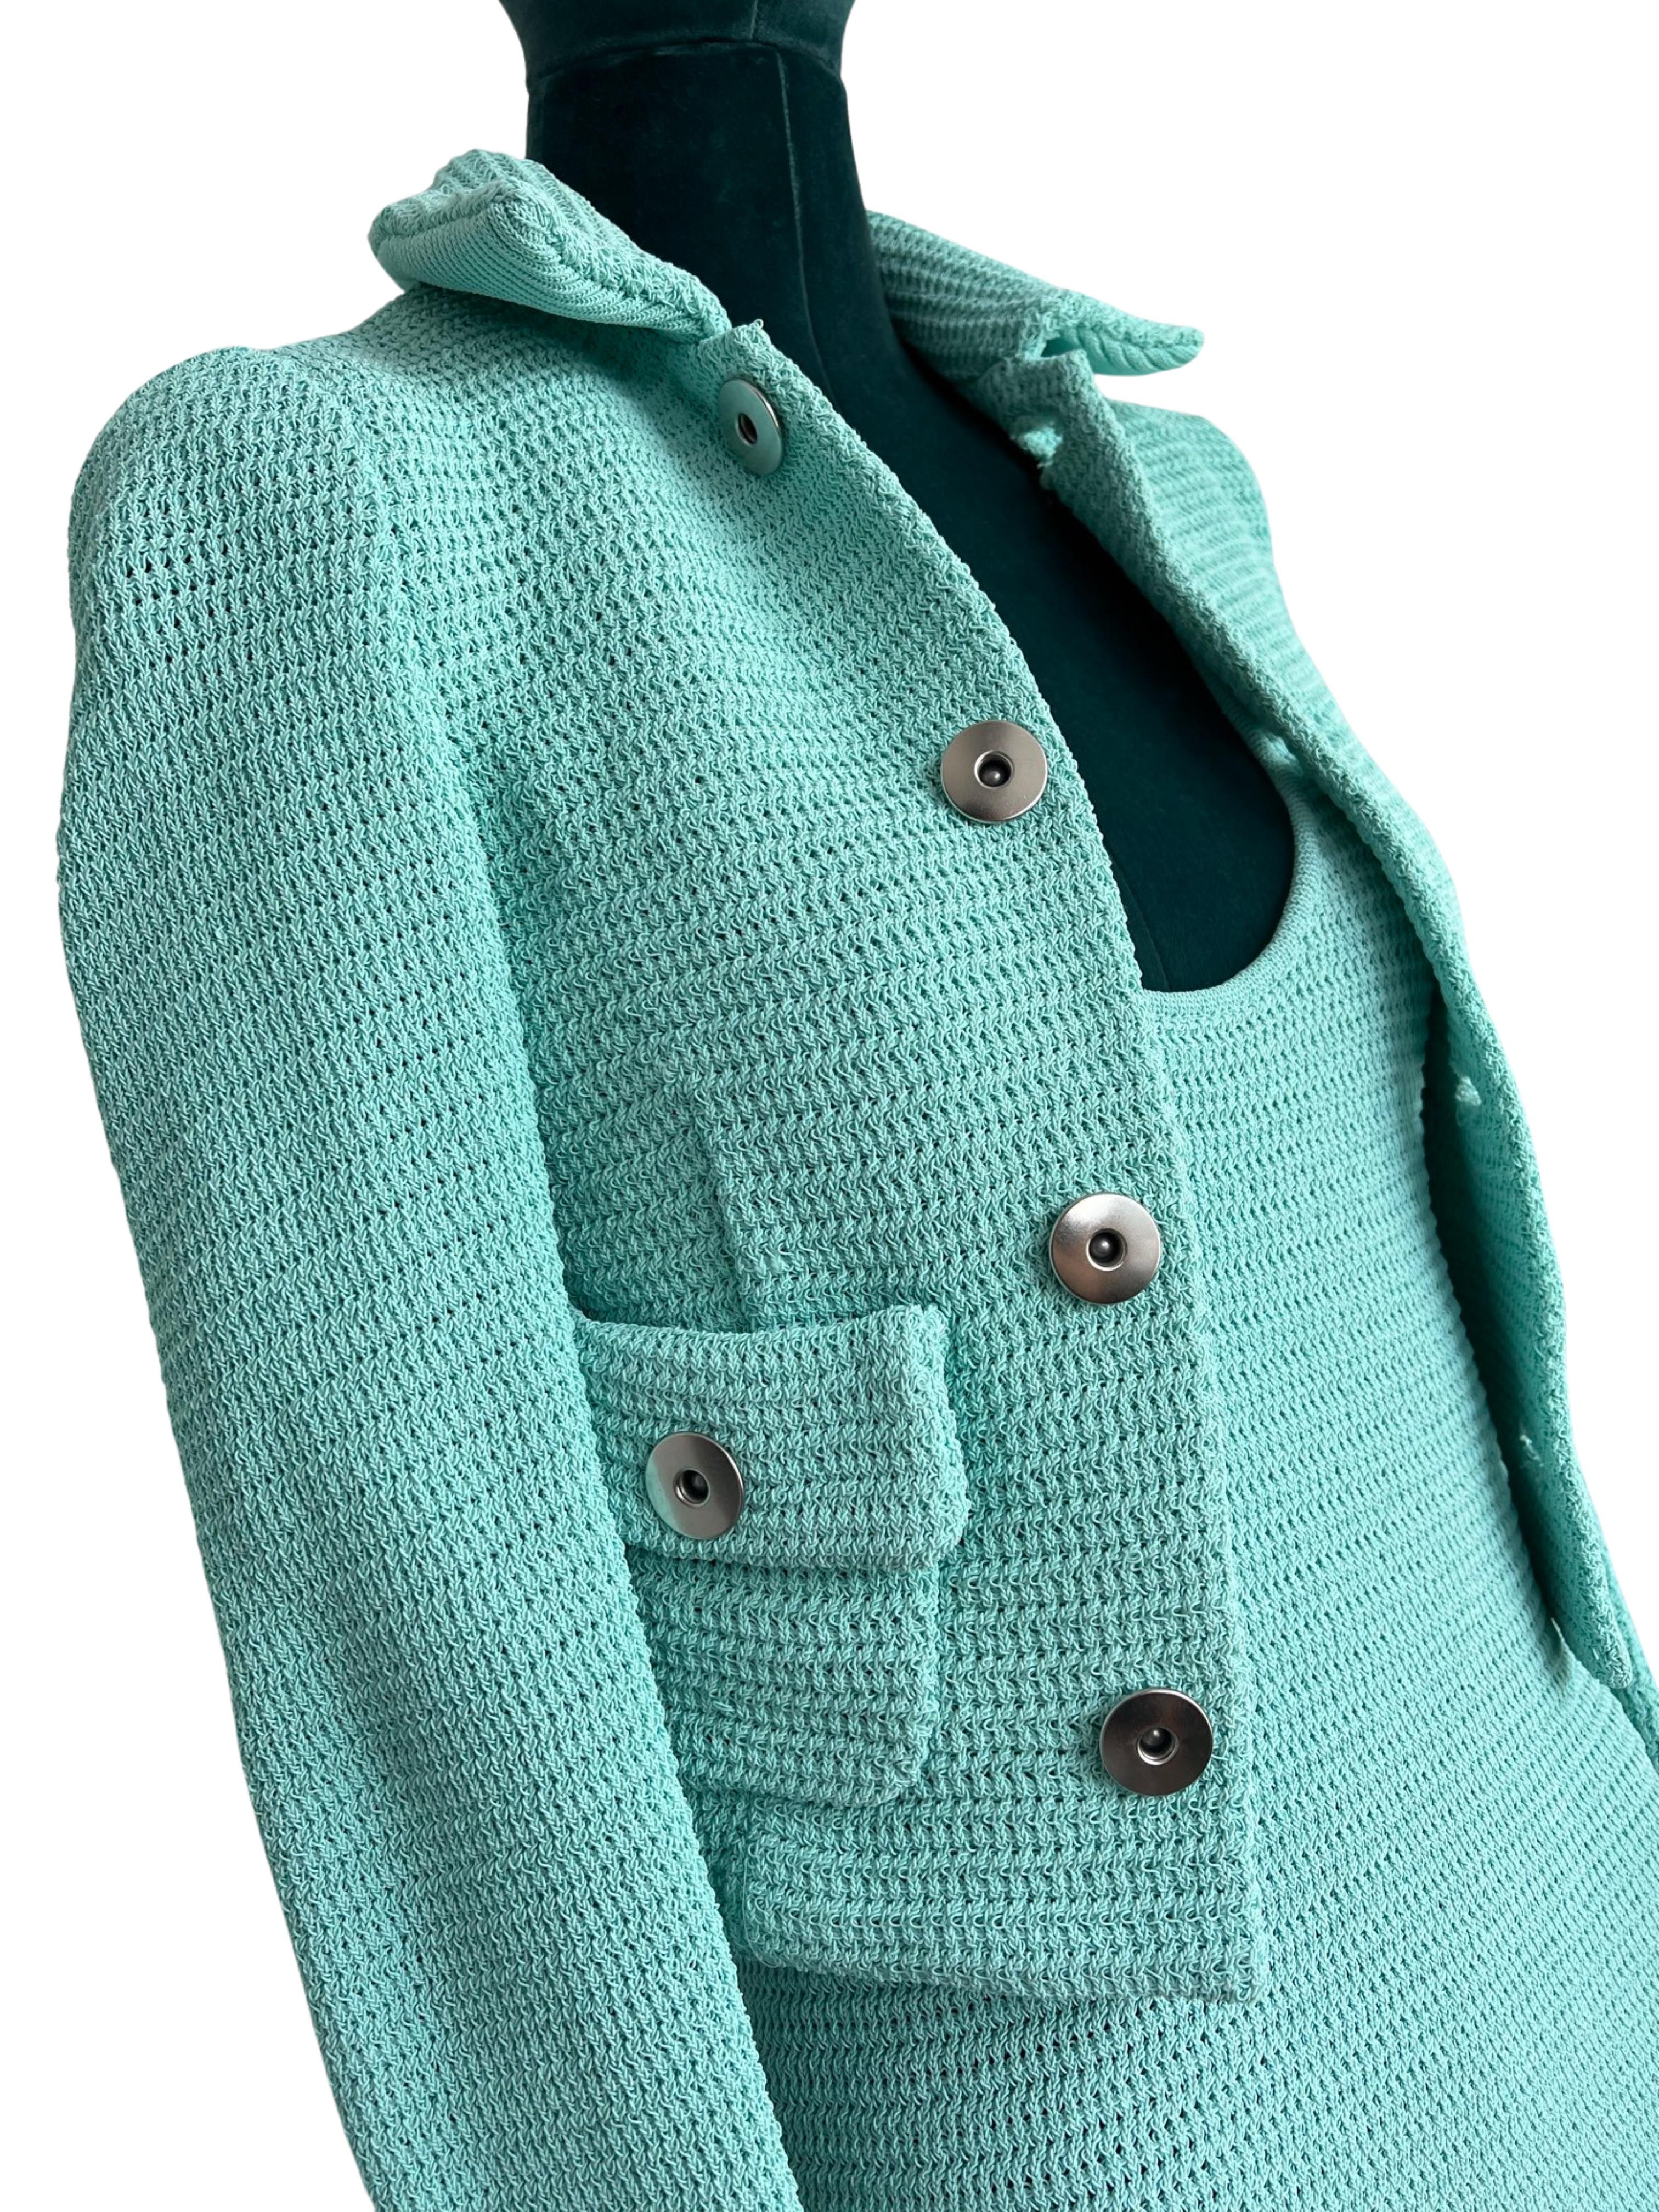 Bottega Veneta Turquoise  Racked Rib Knit Dress and Jacket size S  For Sale 3